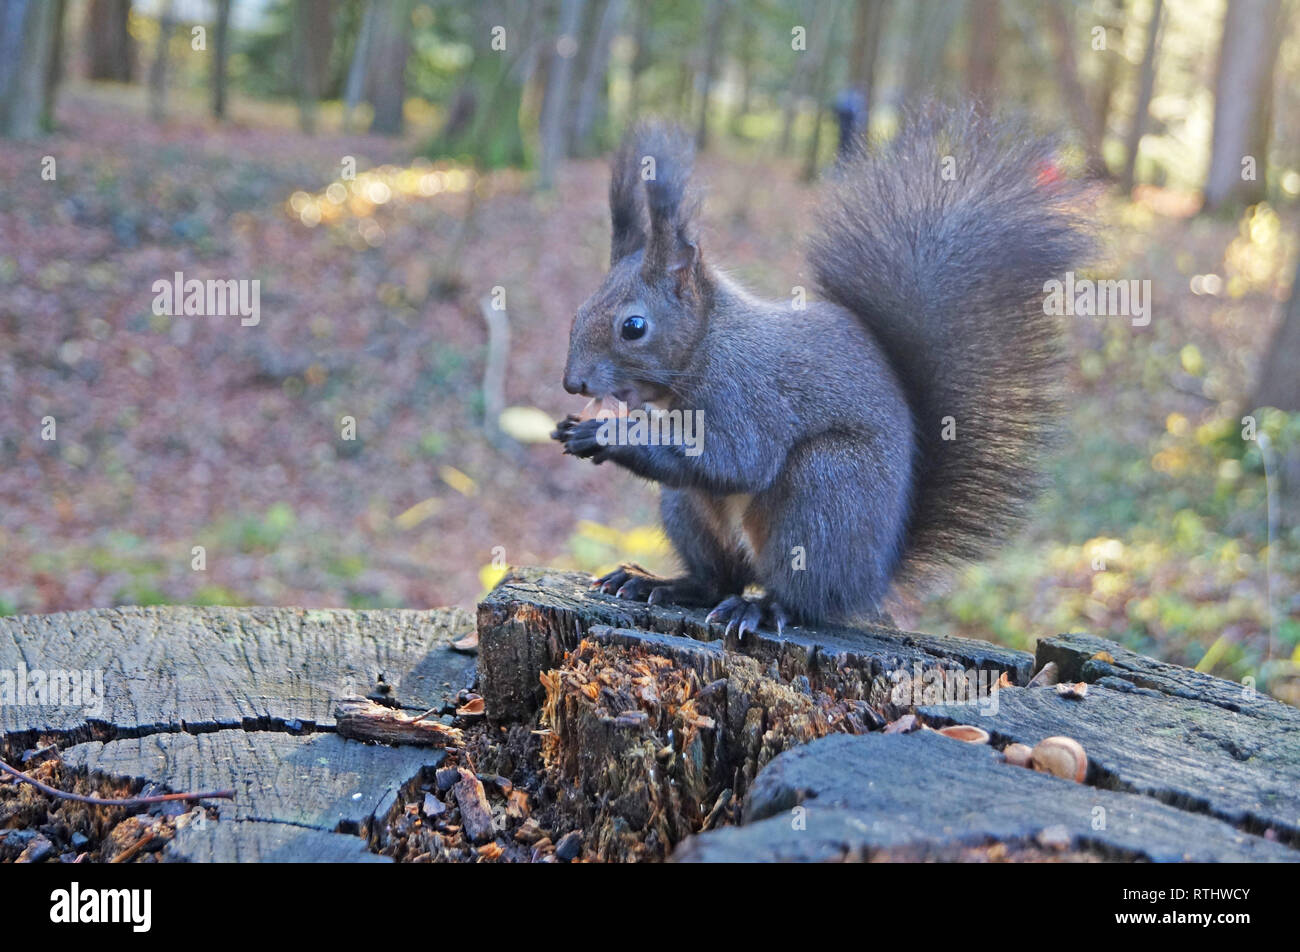 Mit flauschigen schwarzen Pelz essen Muttern auf Hanf an einem sonnigen Frühlingstag Eichhörnchen Stockfoto